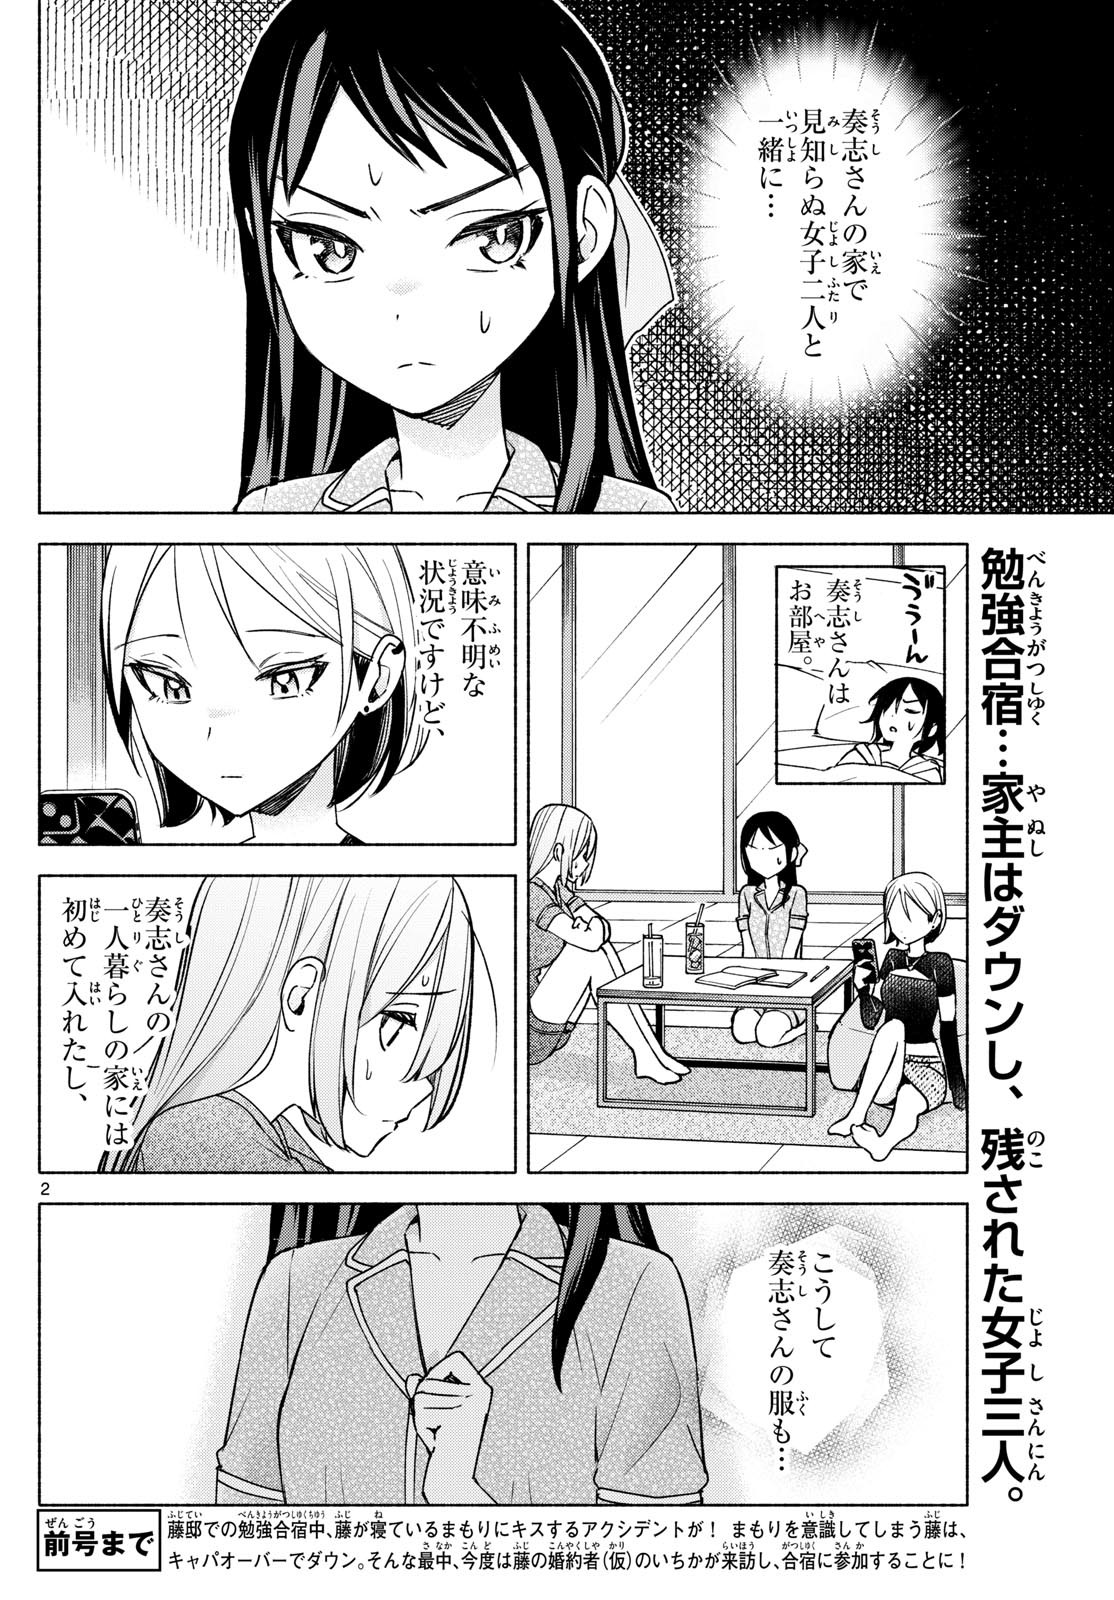 Kimi to Warui Koto ga Shitai - Chapter 031 - Page 2